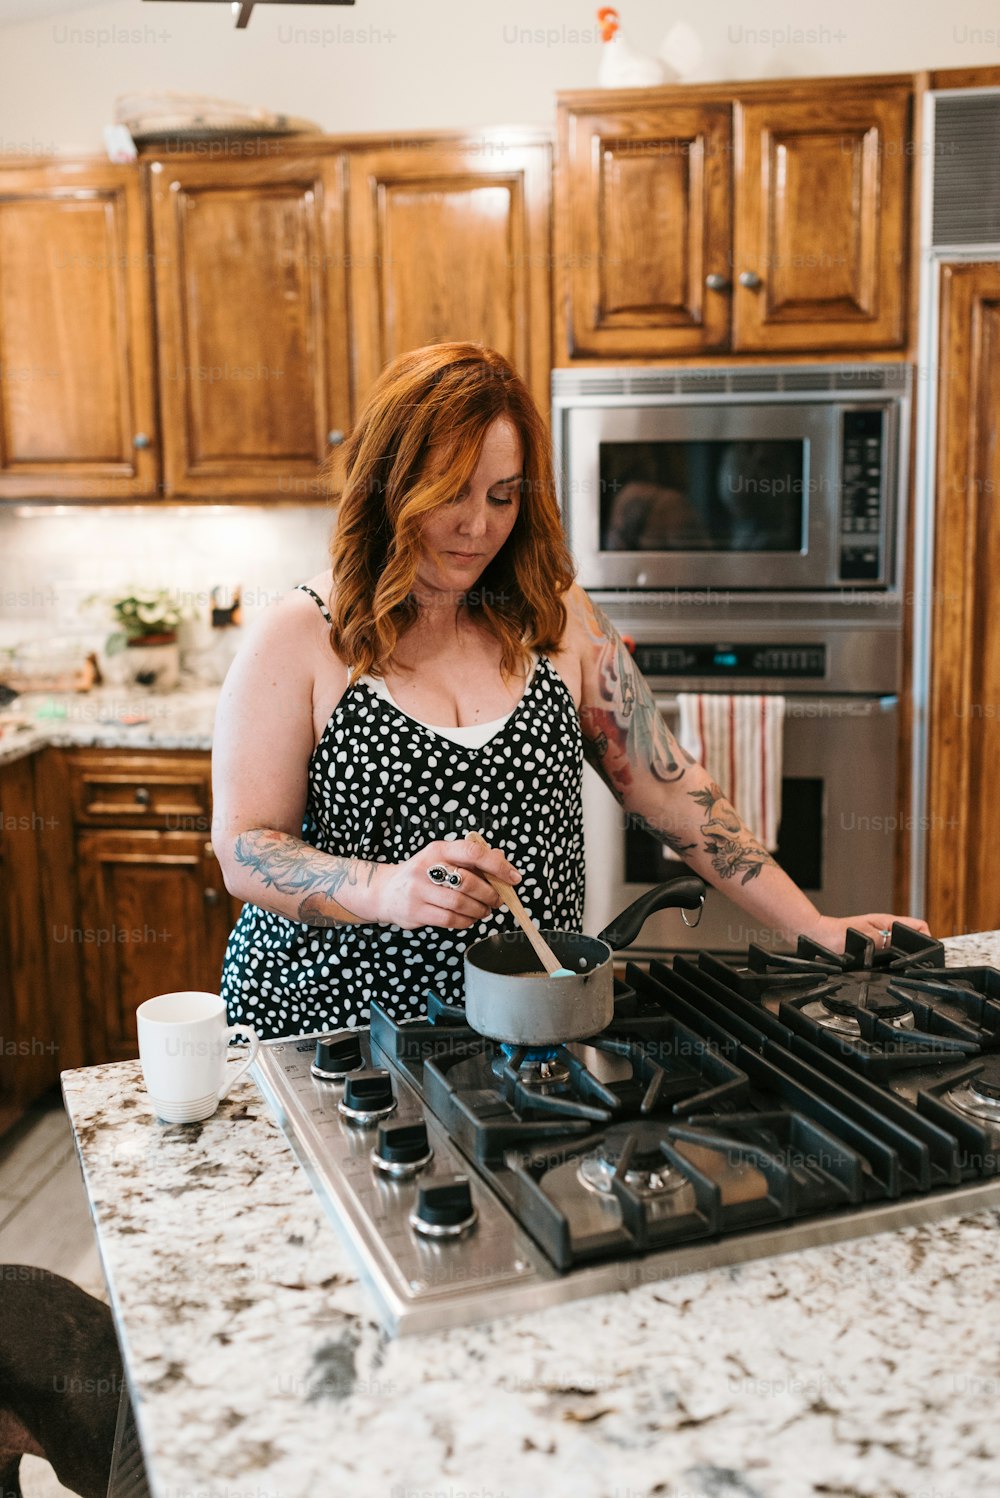 Une femme dans une cuisine préparant de la nourriture sur un poêle